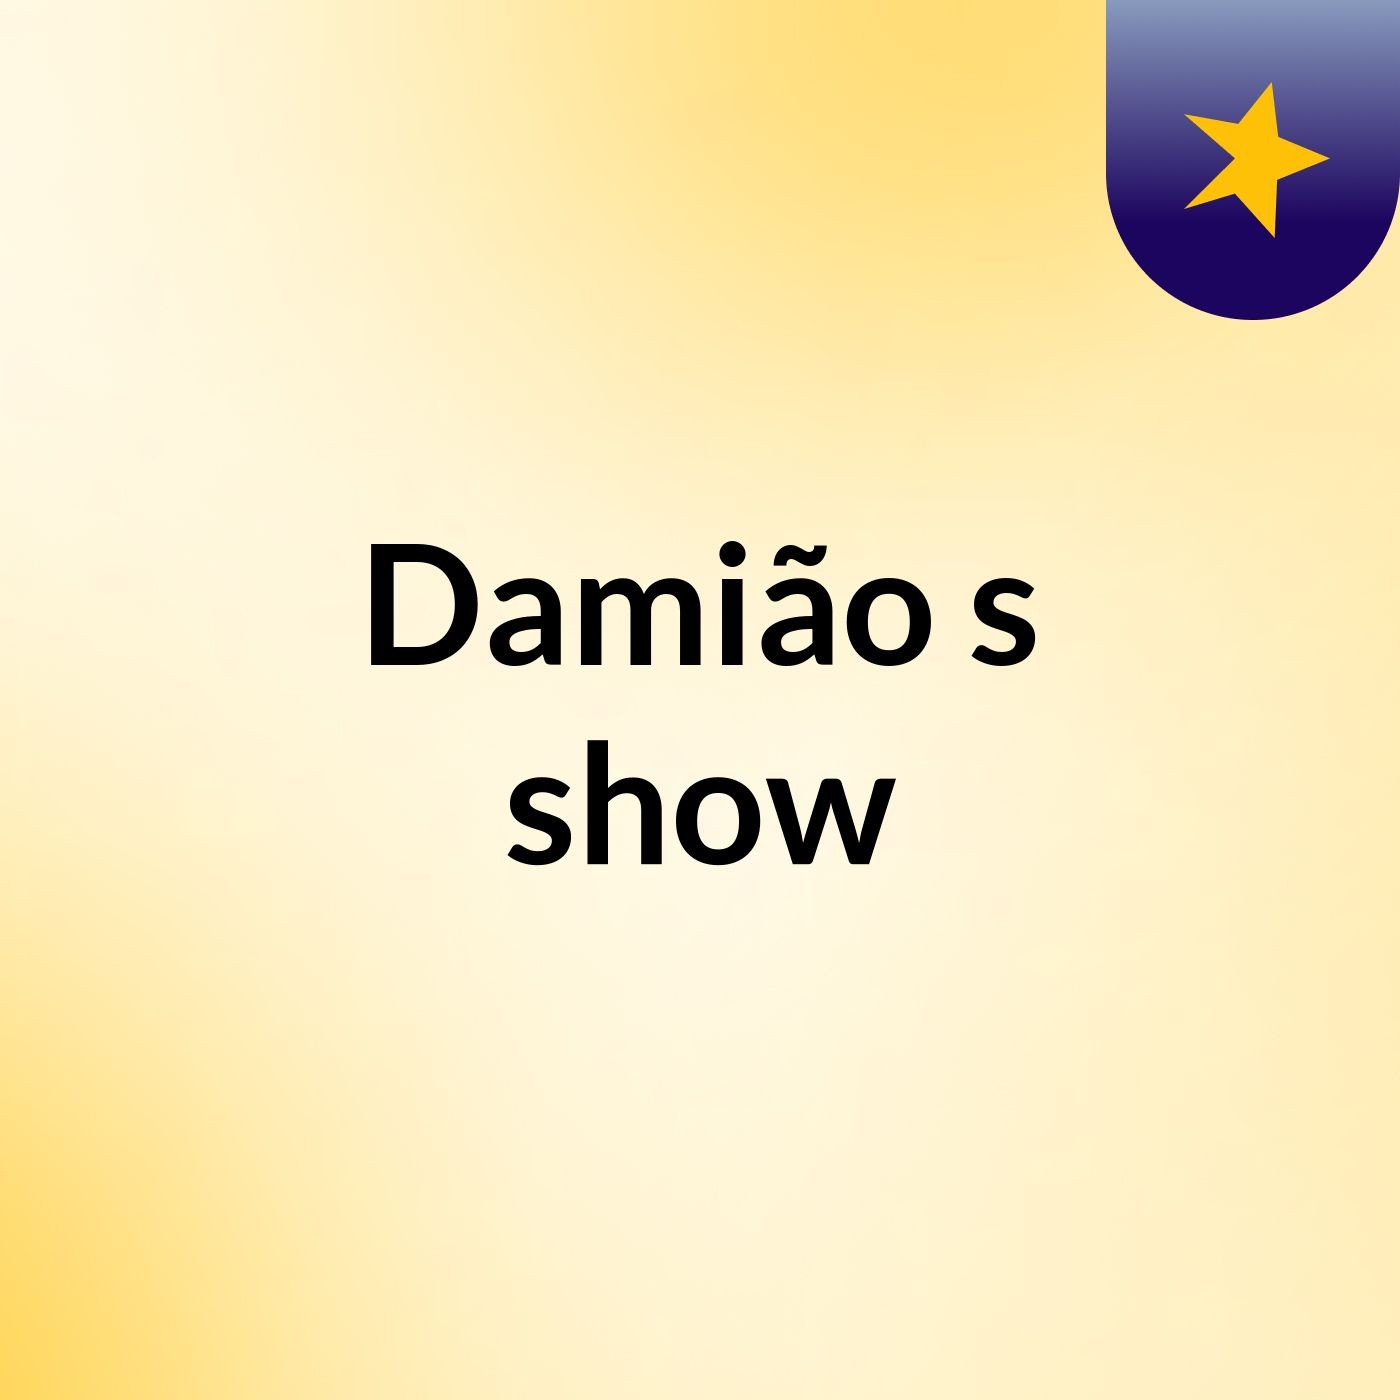 Damião's show